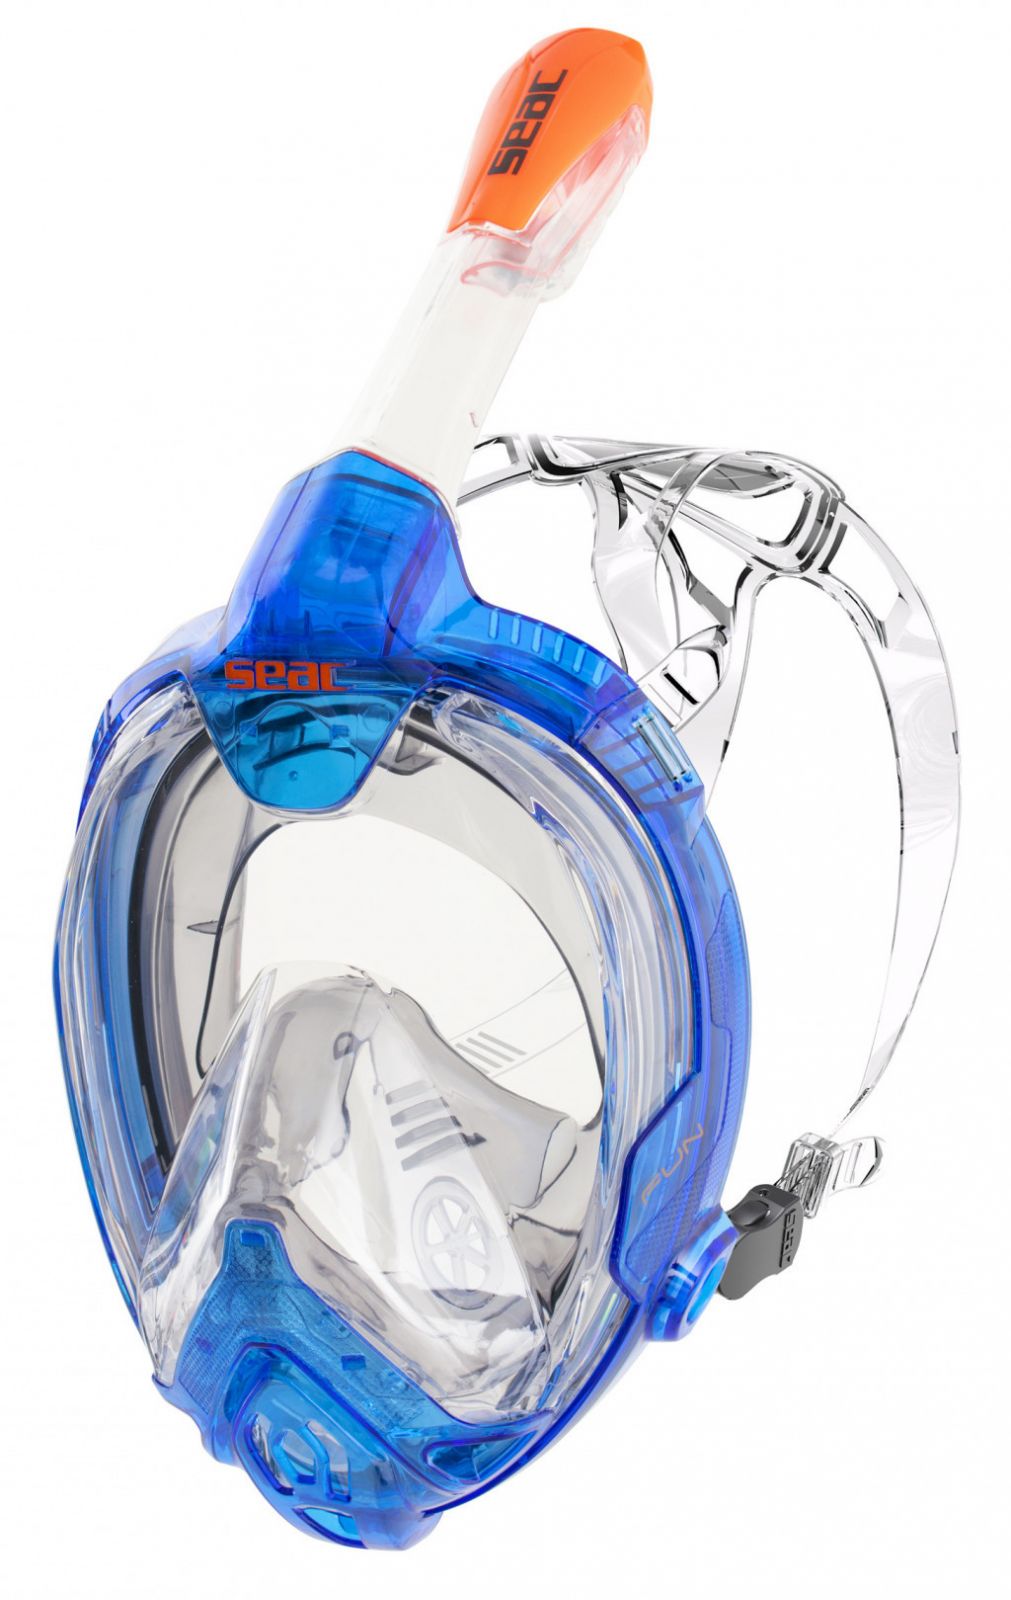 Celoobličejová maska FUN celoobličejová maska pro naše nejmenší - modrá/oranžová SEAC SUB